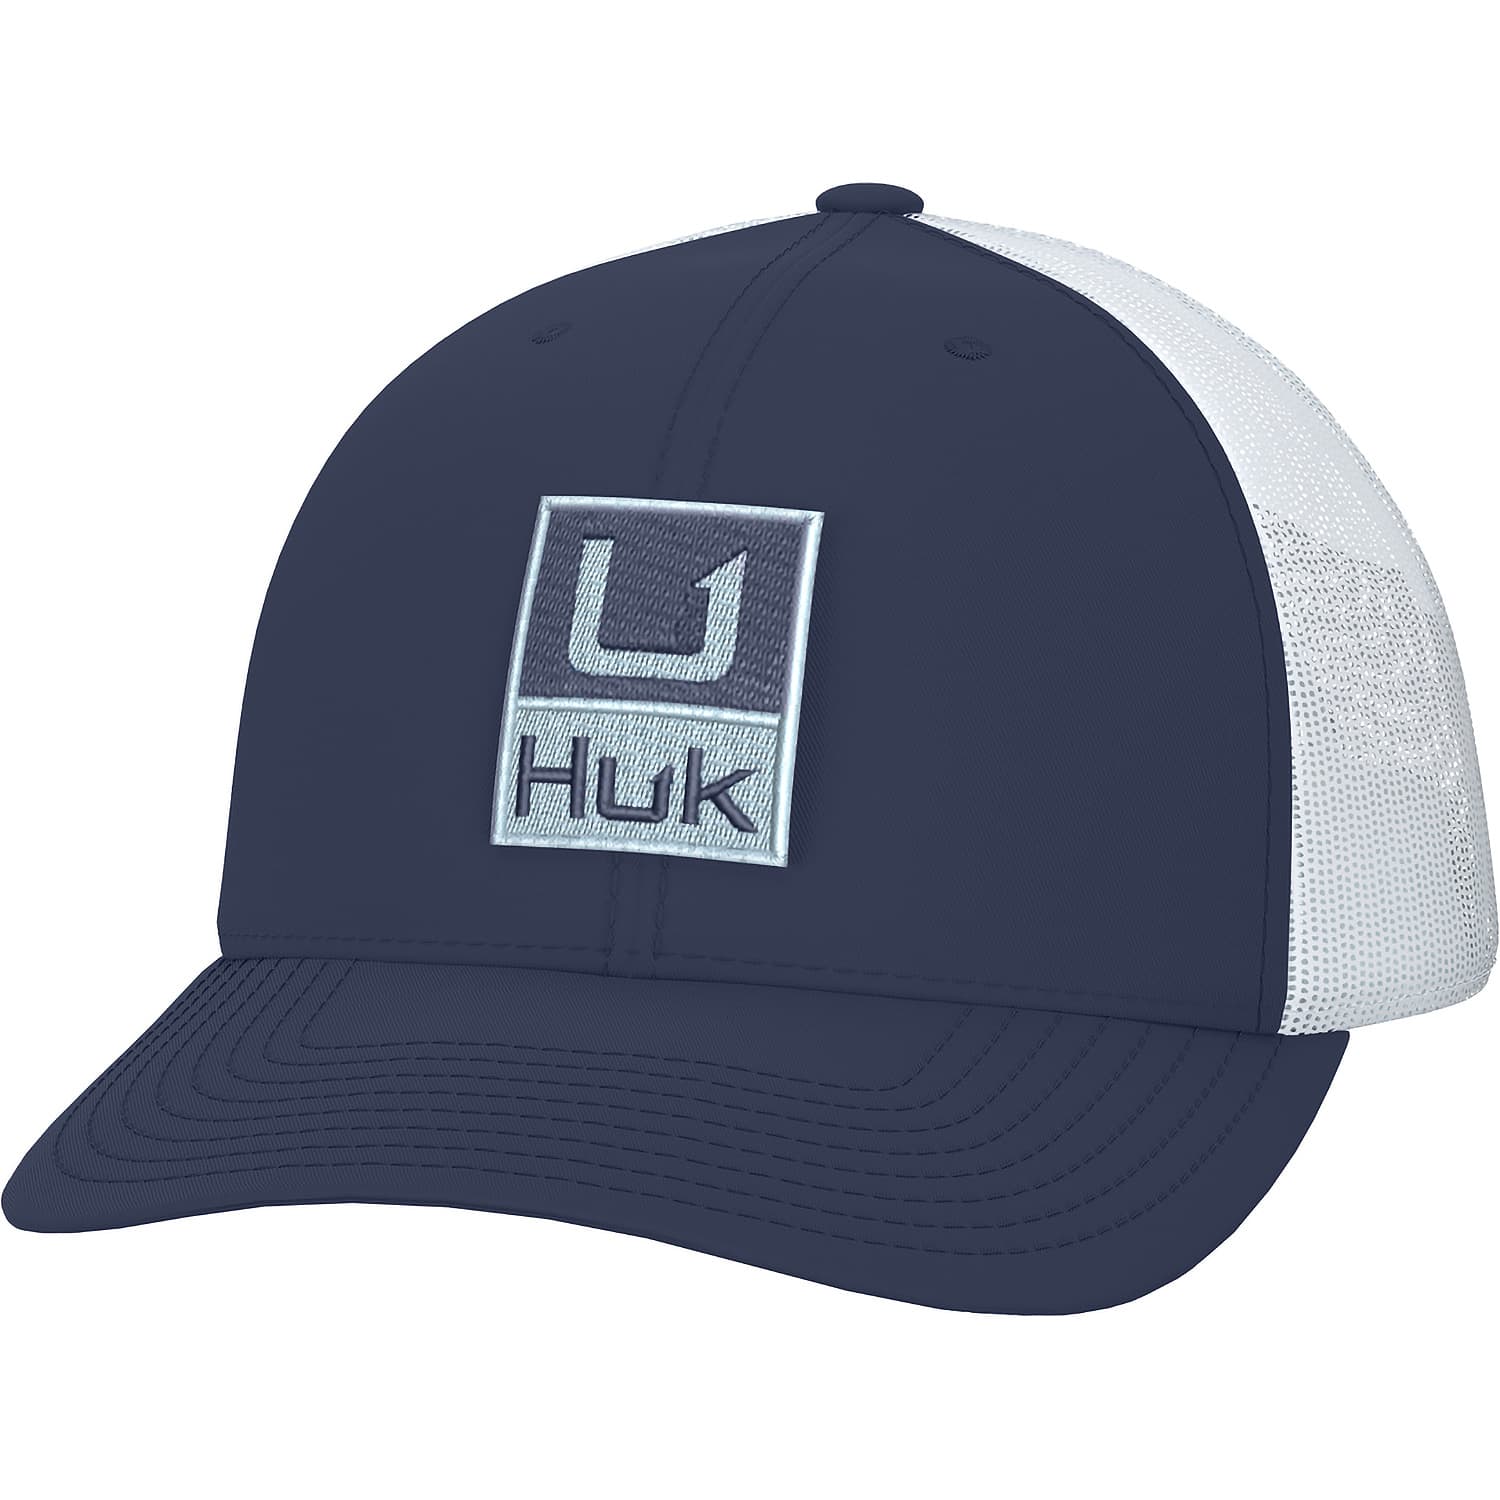 Huk® Men’s Huk’d Up Trucker Cap